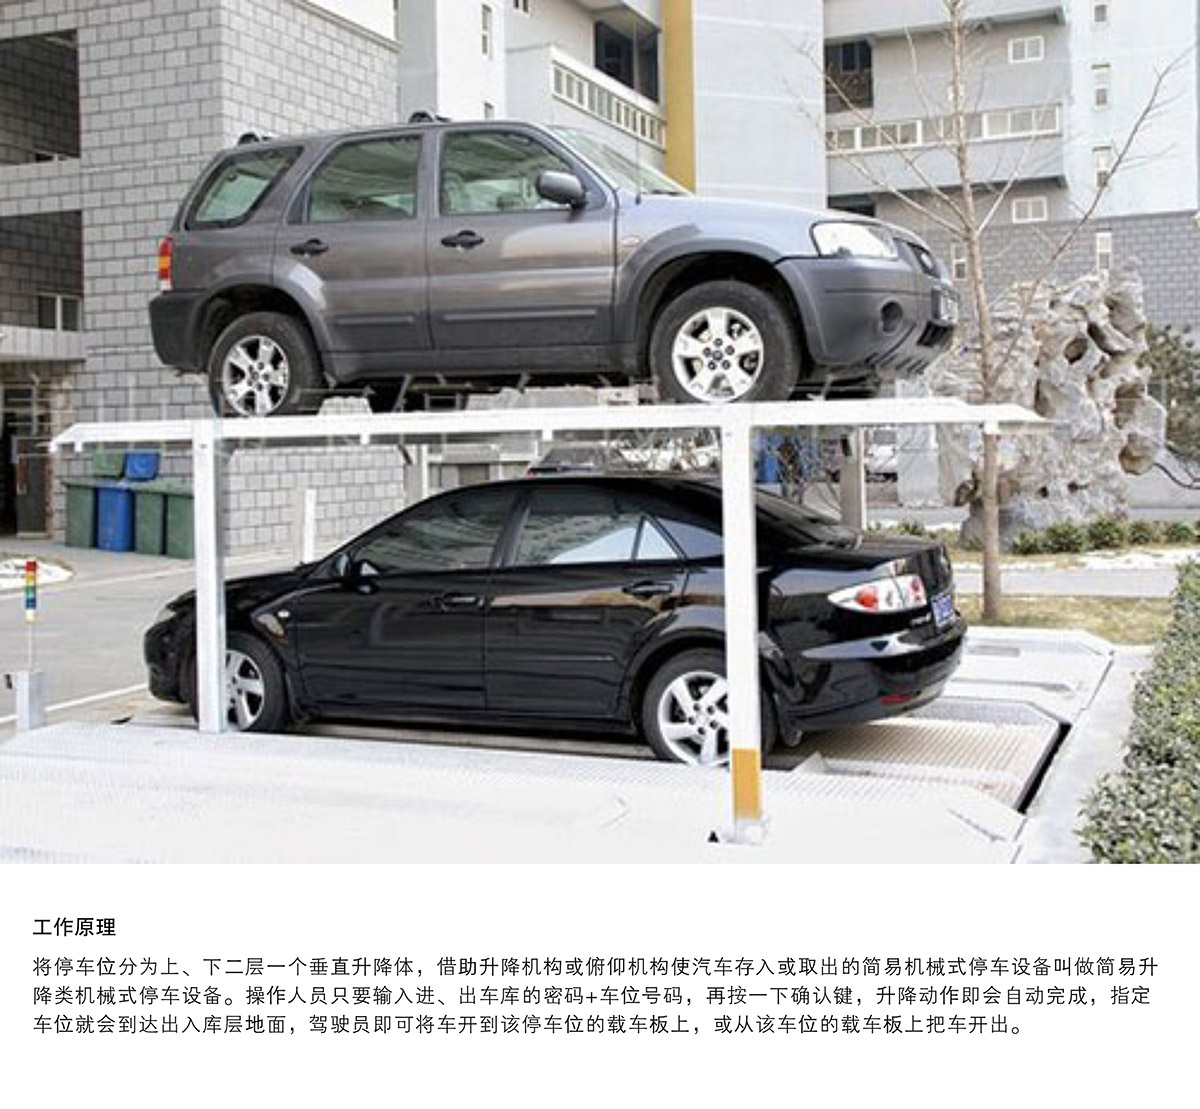 立体车位PJS2D1二层地坑简易升降停车设备工作原理.jpg